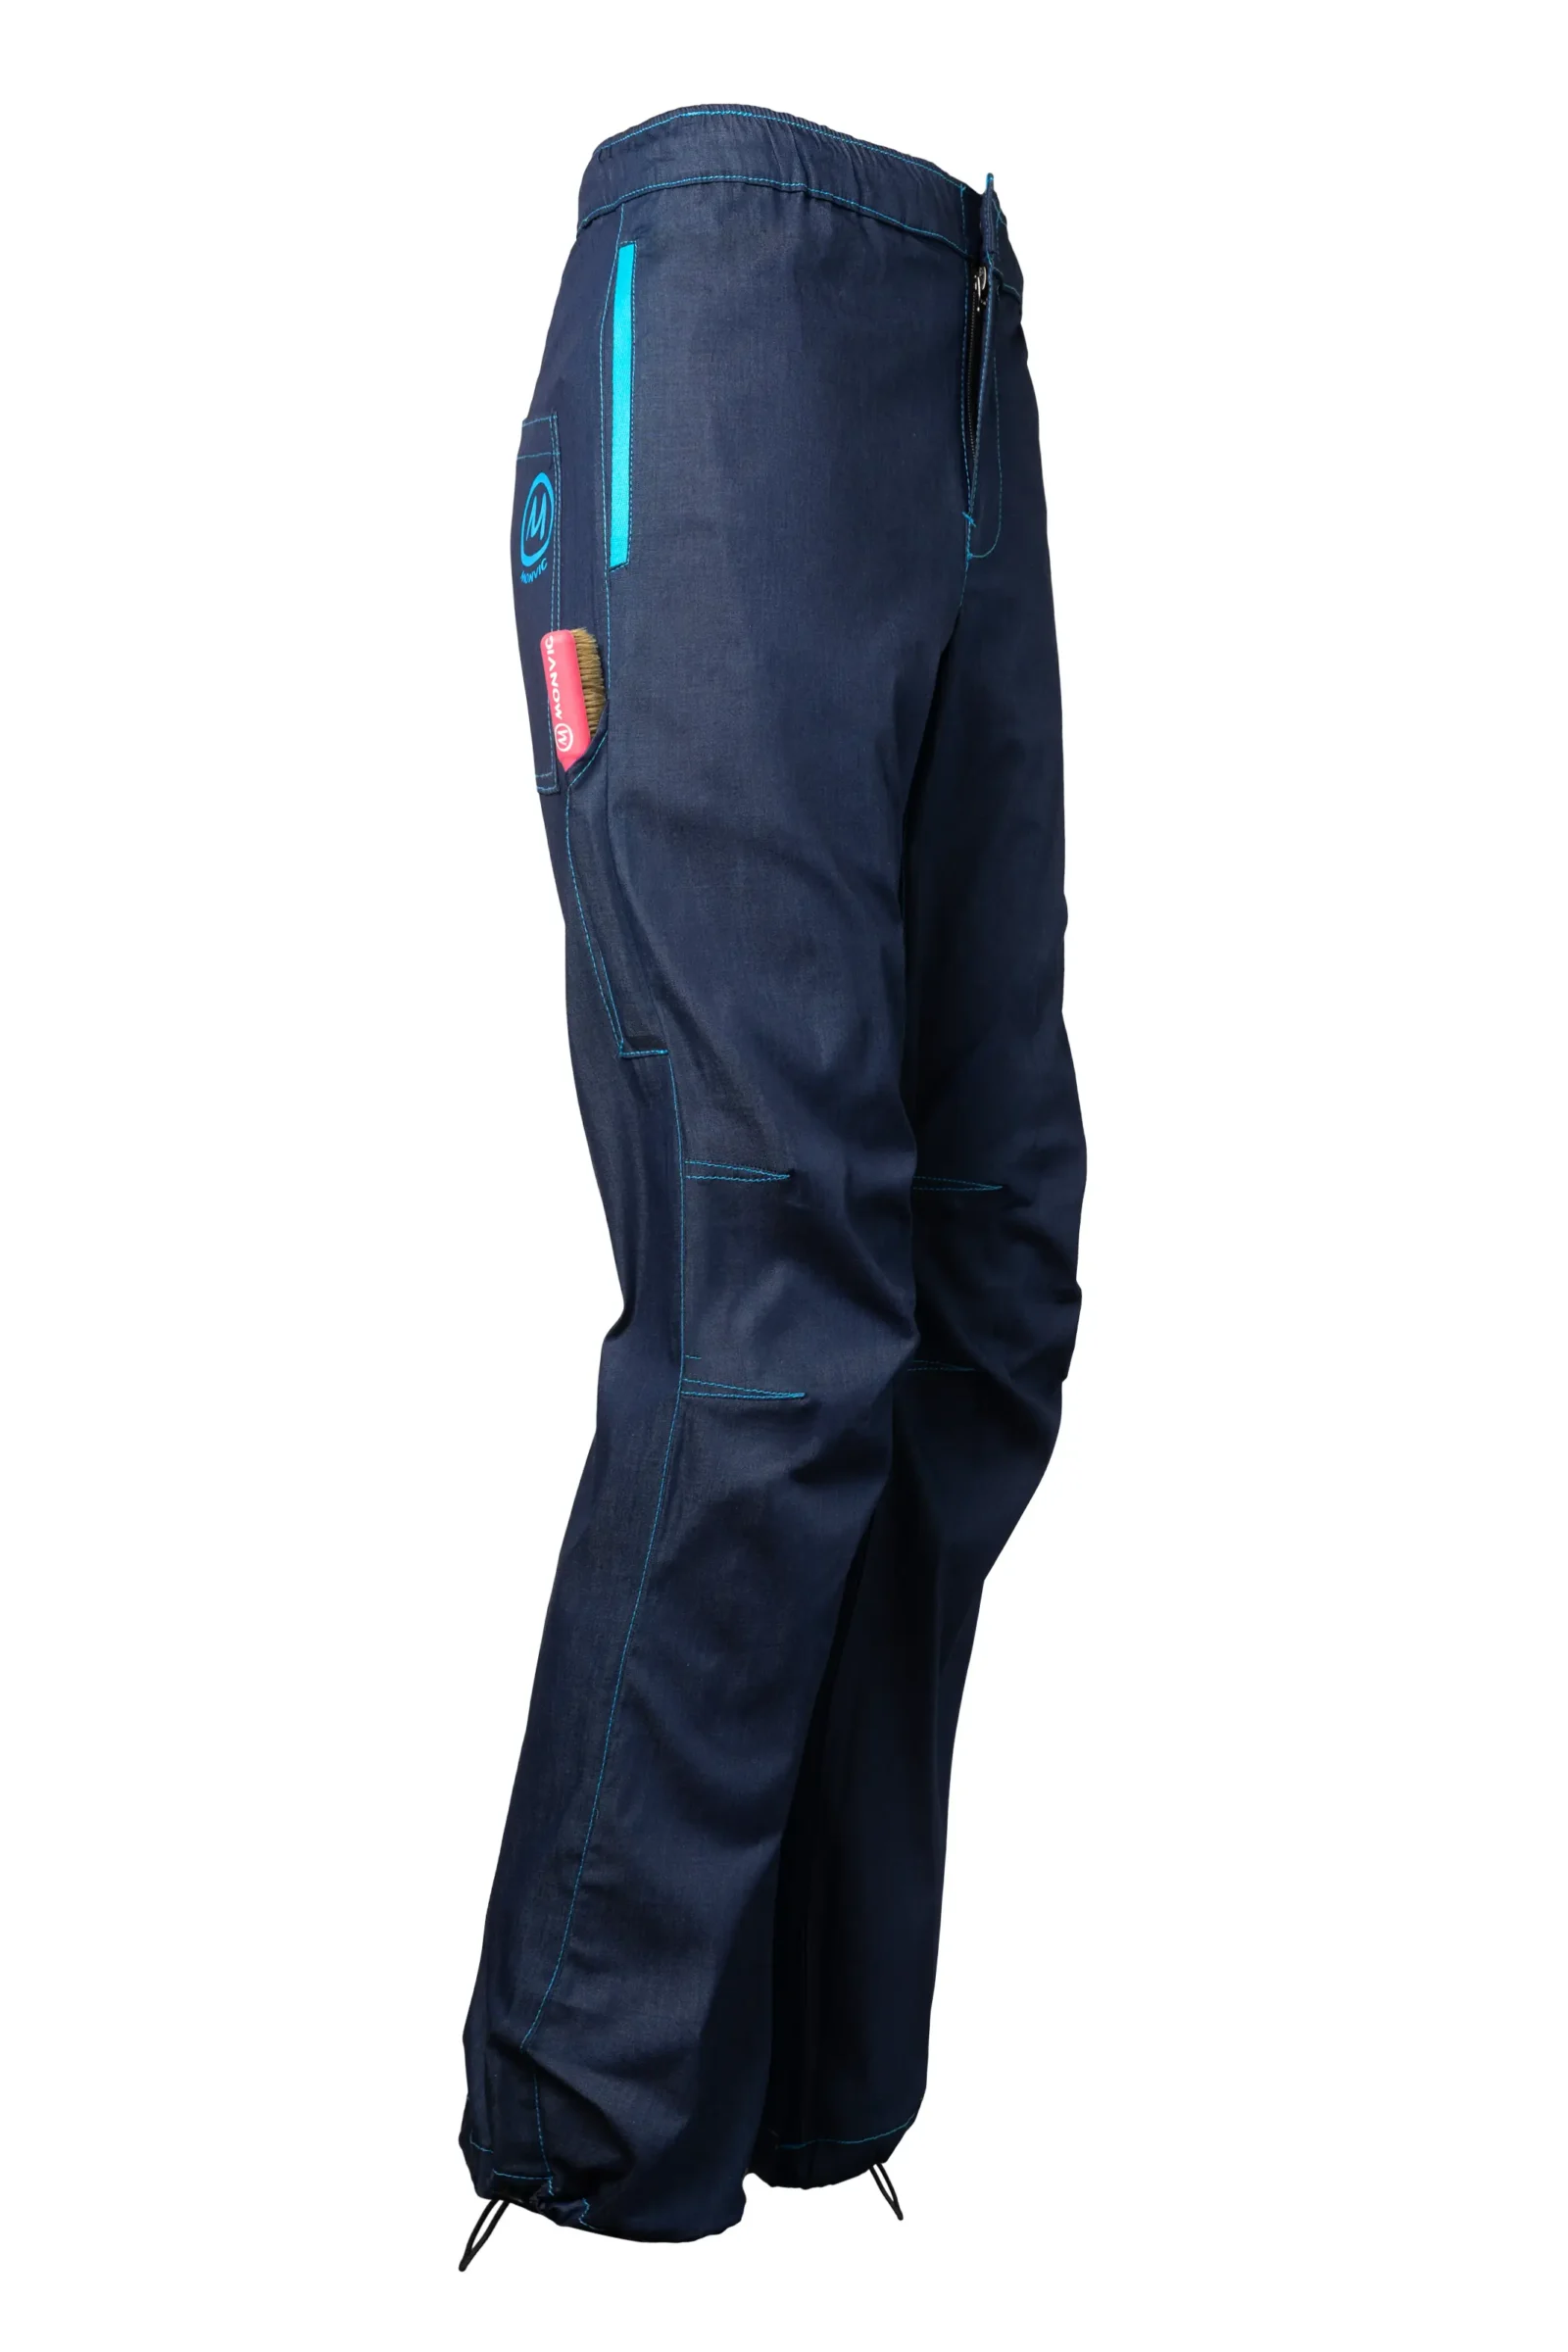 Jeans arrampicata uomo - denim profilo azzurro - GERONIMO Monvic